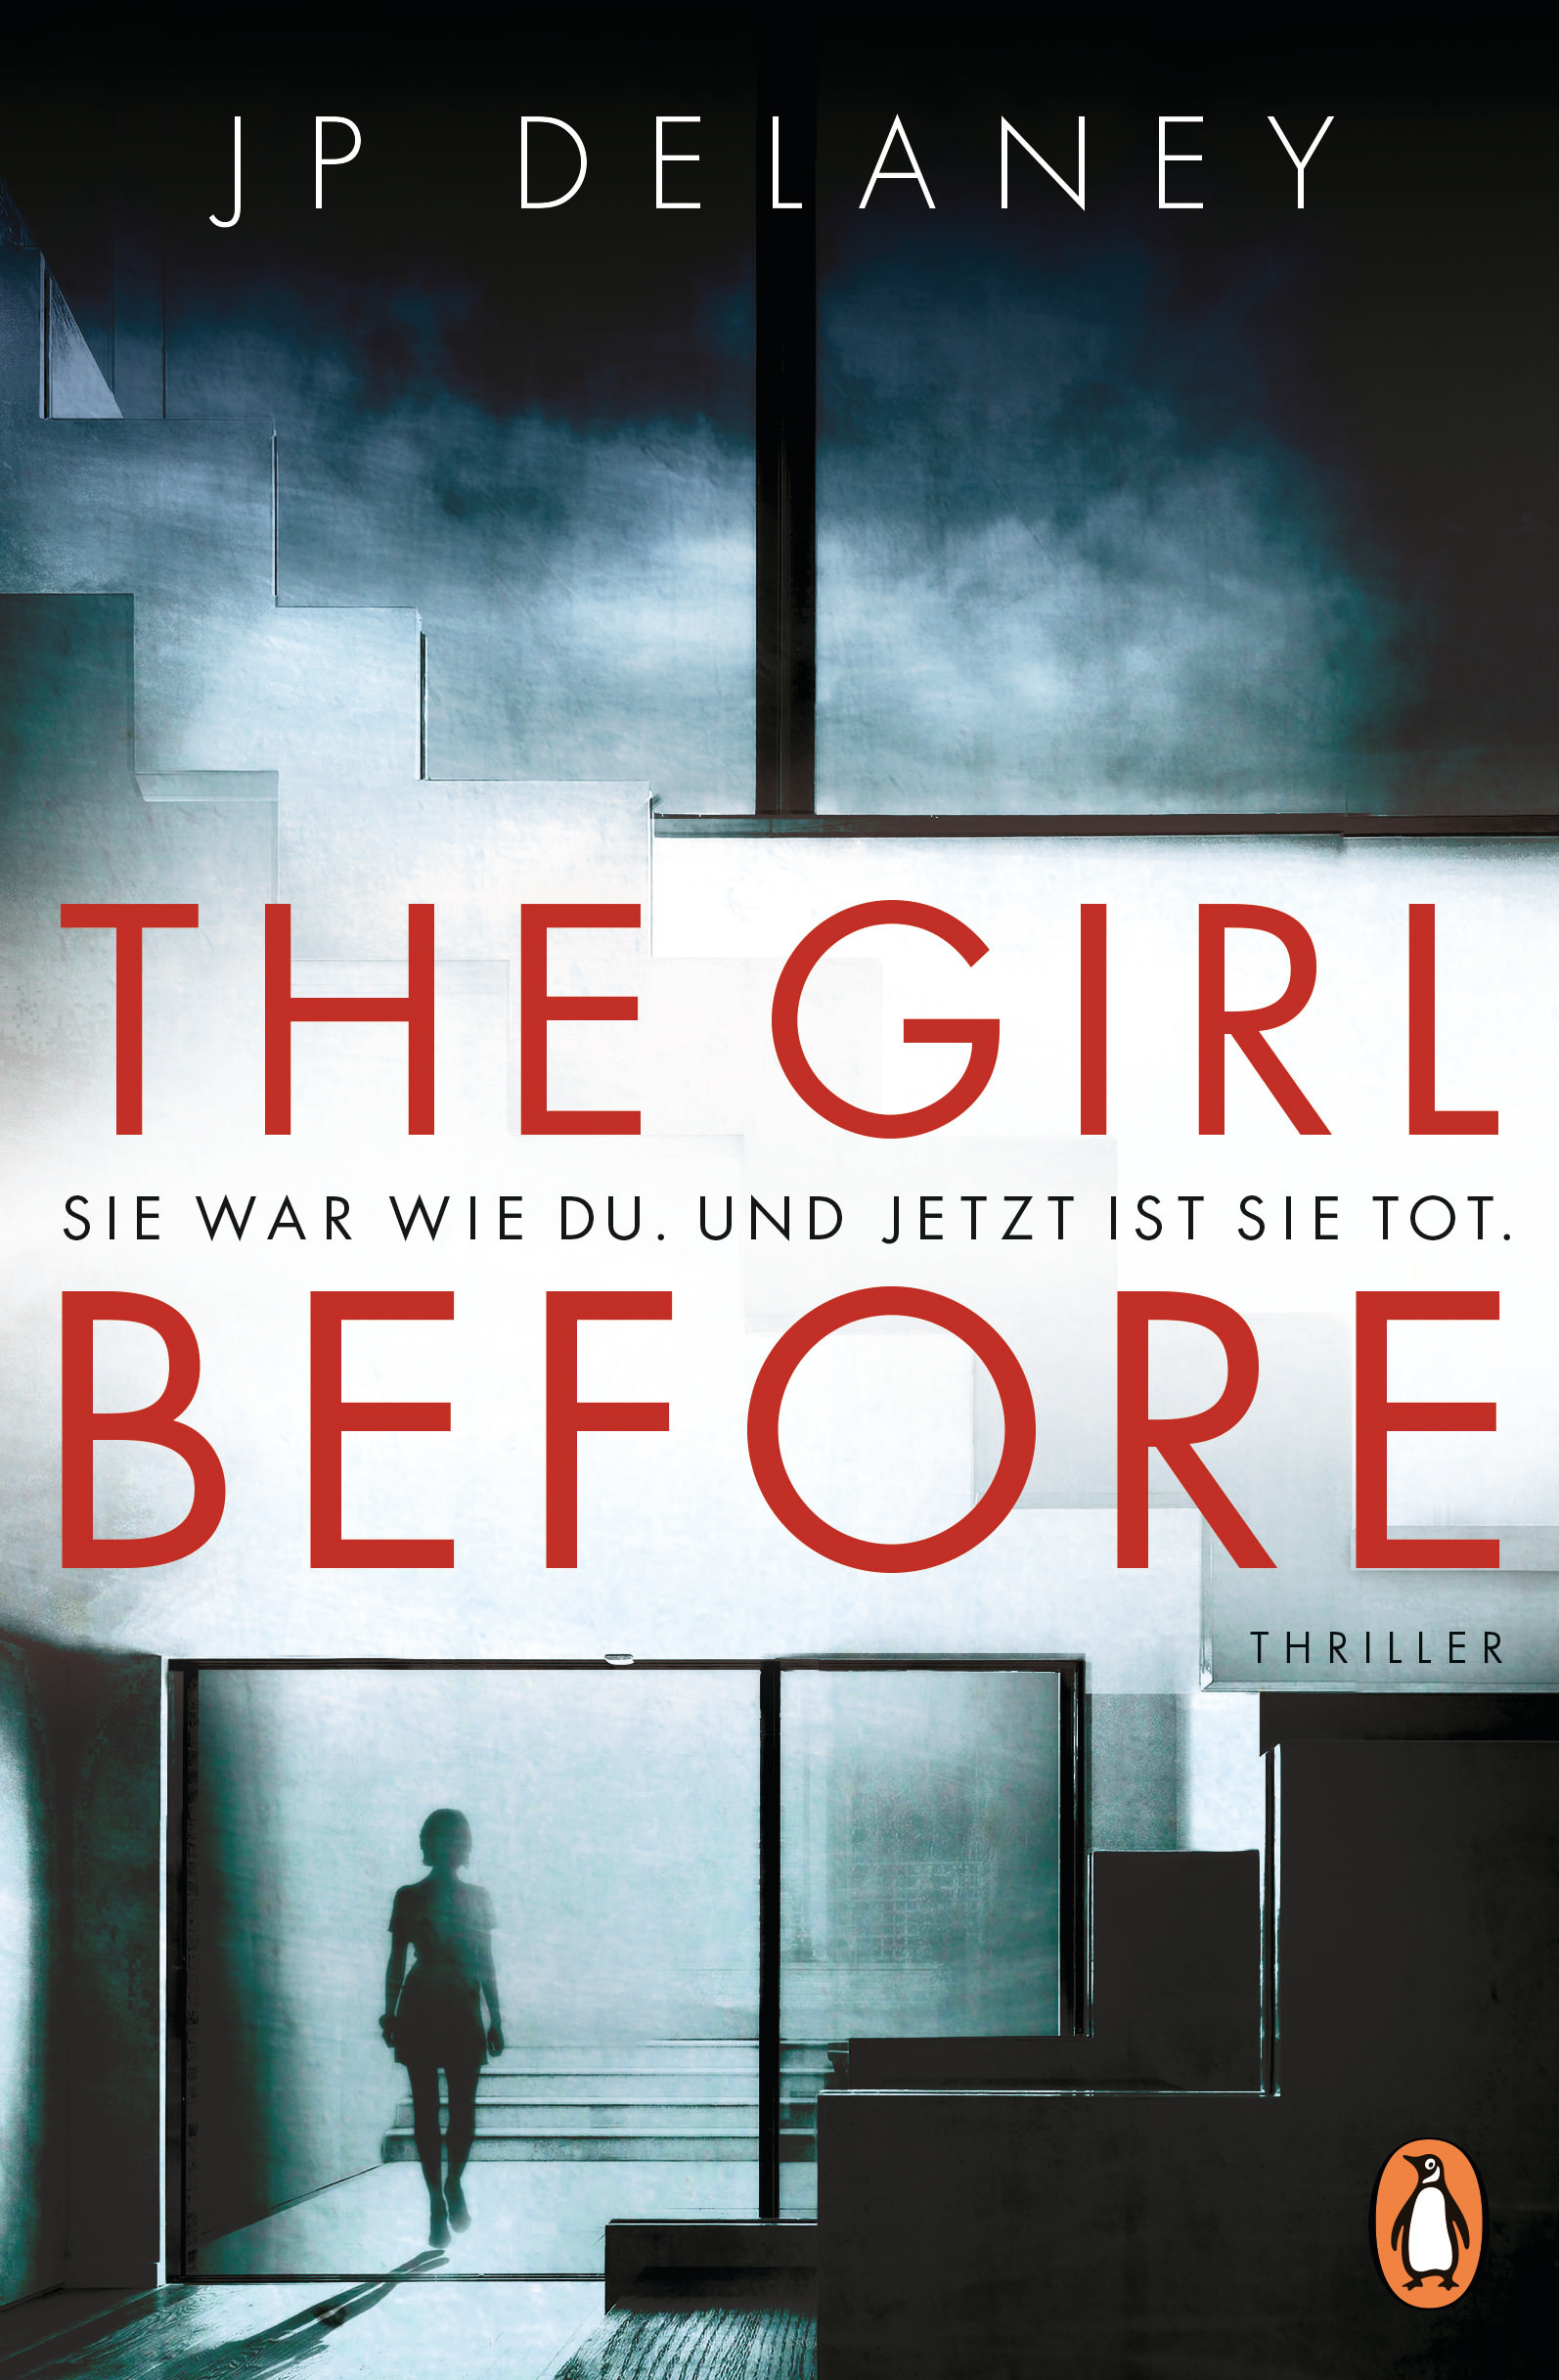 Buchcover: JP Delayney: The Girl Before. Penguin Verlag